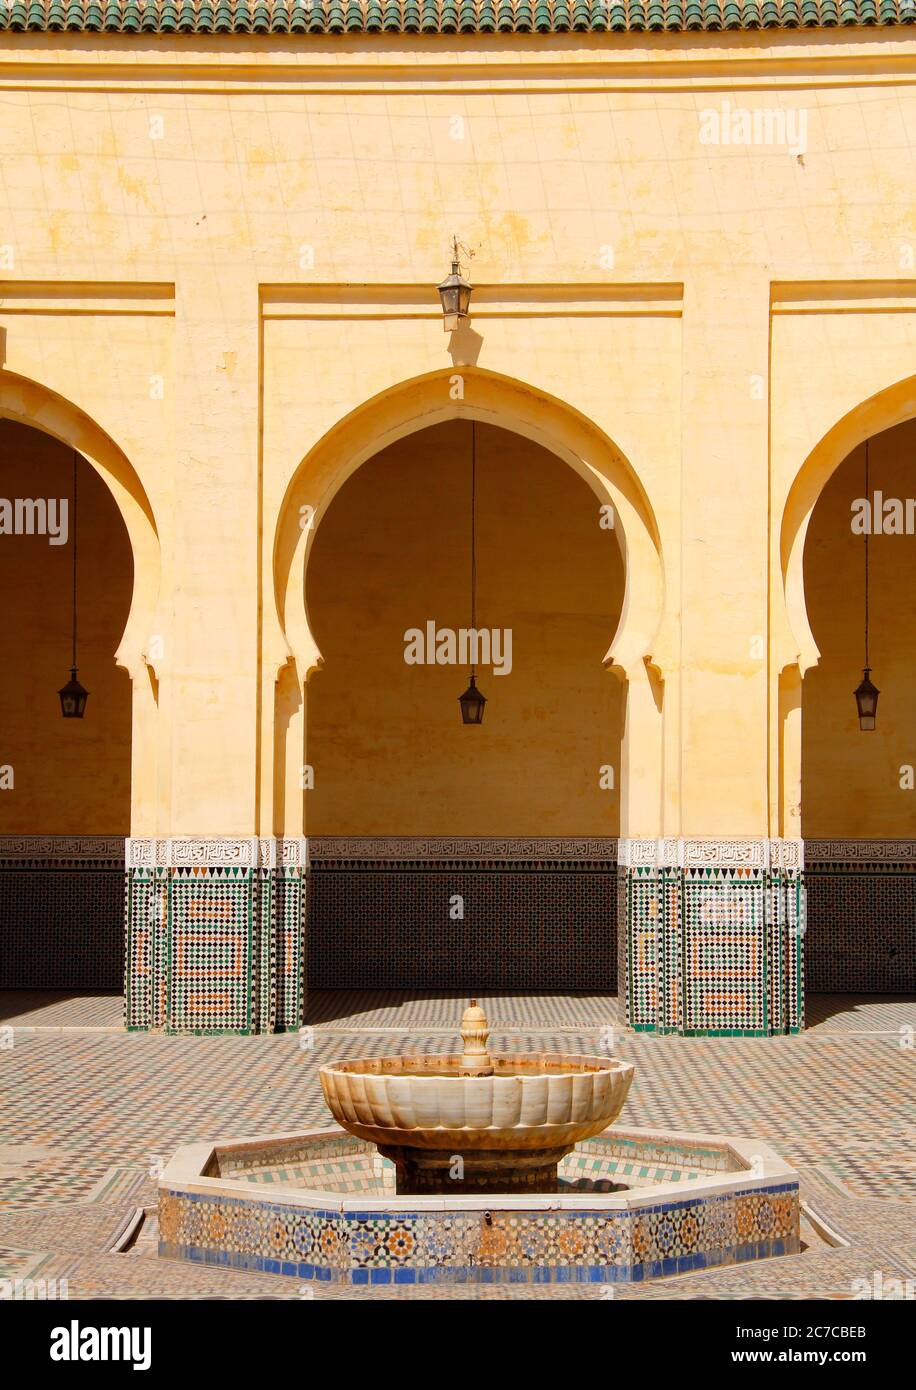 Arche et fontaine arabesque dans le mausolée de Moulay Ismail, l'icône touristique la plus importante de Meknes, au Maroc. Patrimoine mondial de l'UNESCO. Banque D'Images